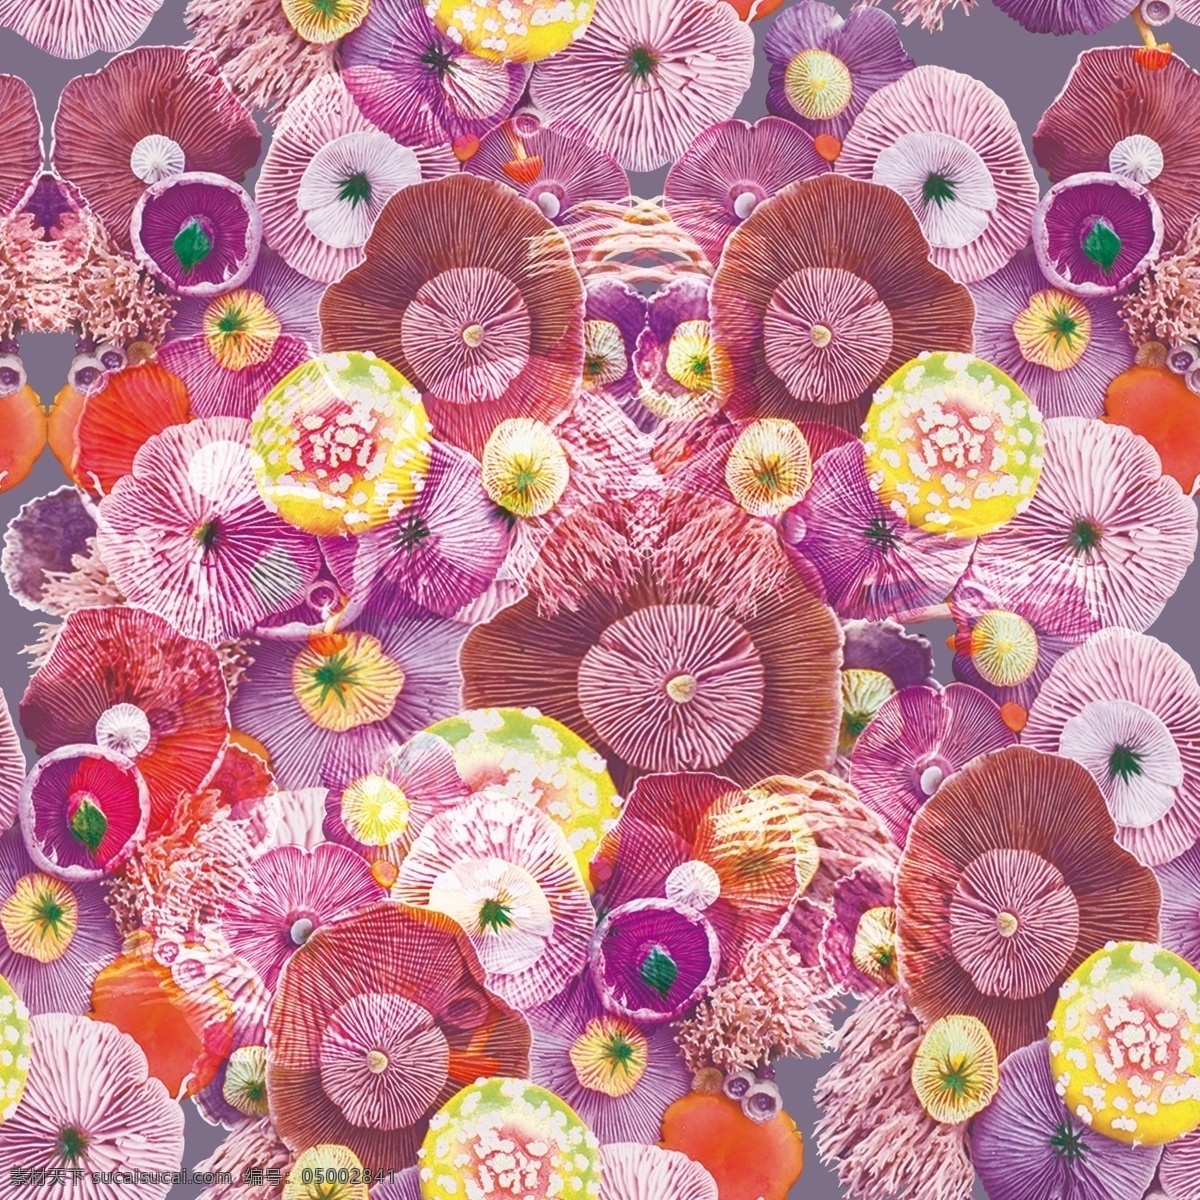 蘑菇背景 彩色蘑菇 数码印花 服装花型设计 高清素材 时尚潮牌 分层